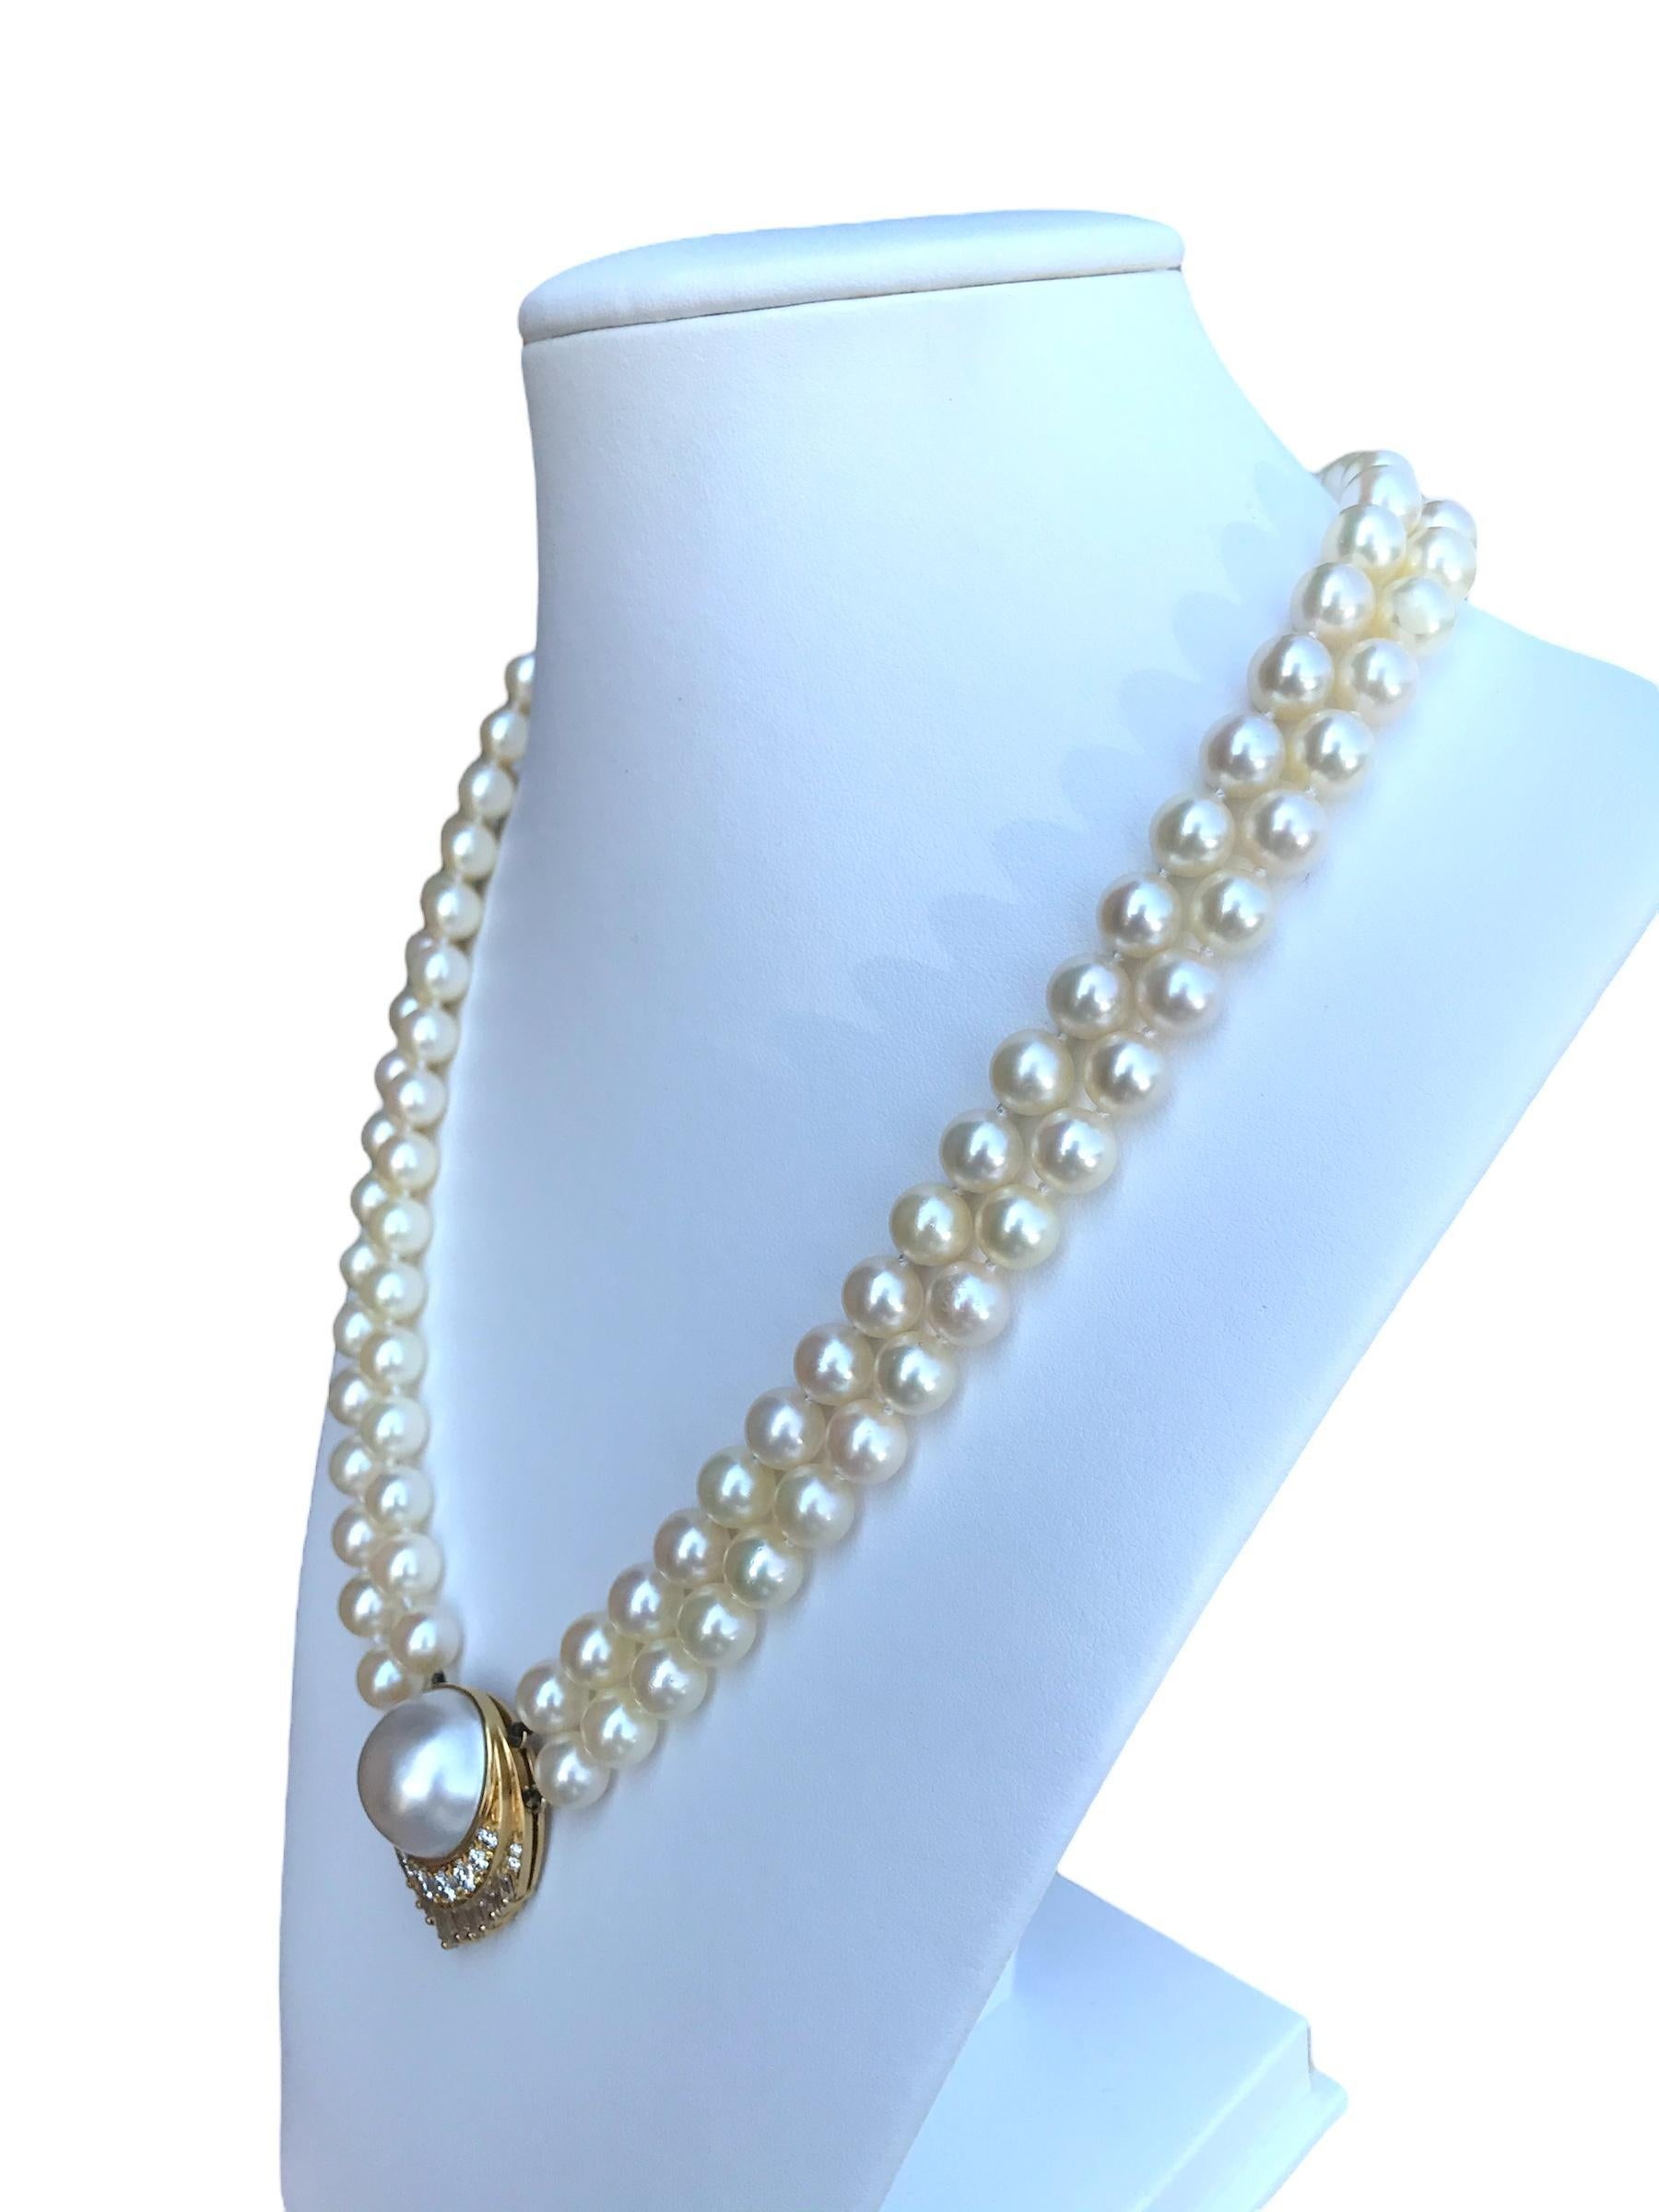 Baguette Cut Retro Pearl Diamond Necklace 2 Carats For Sale